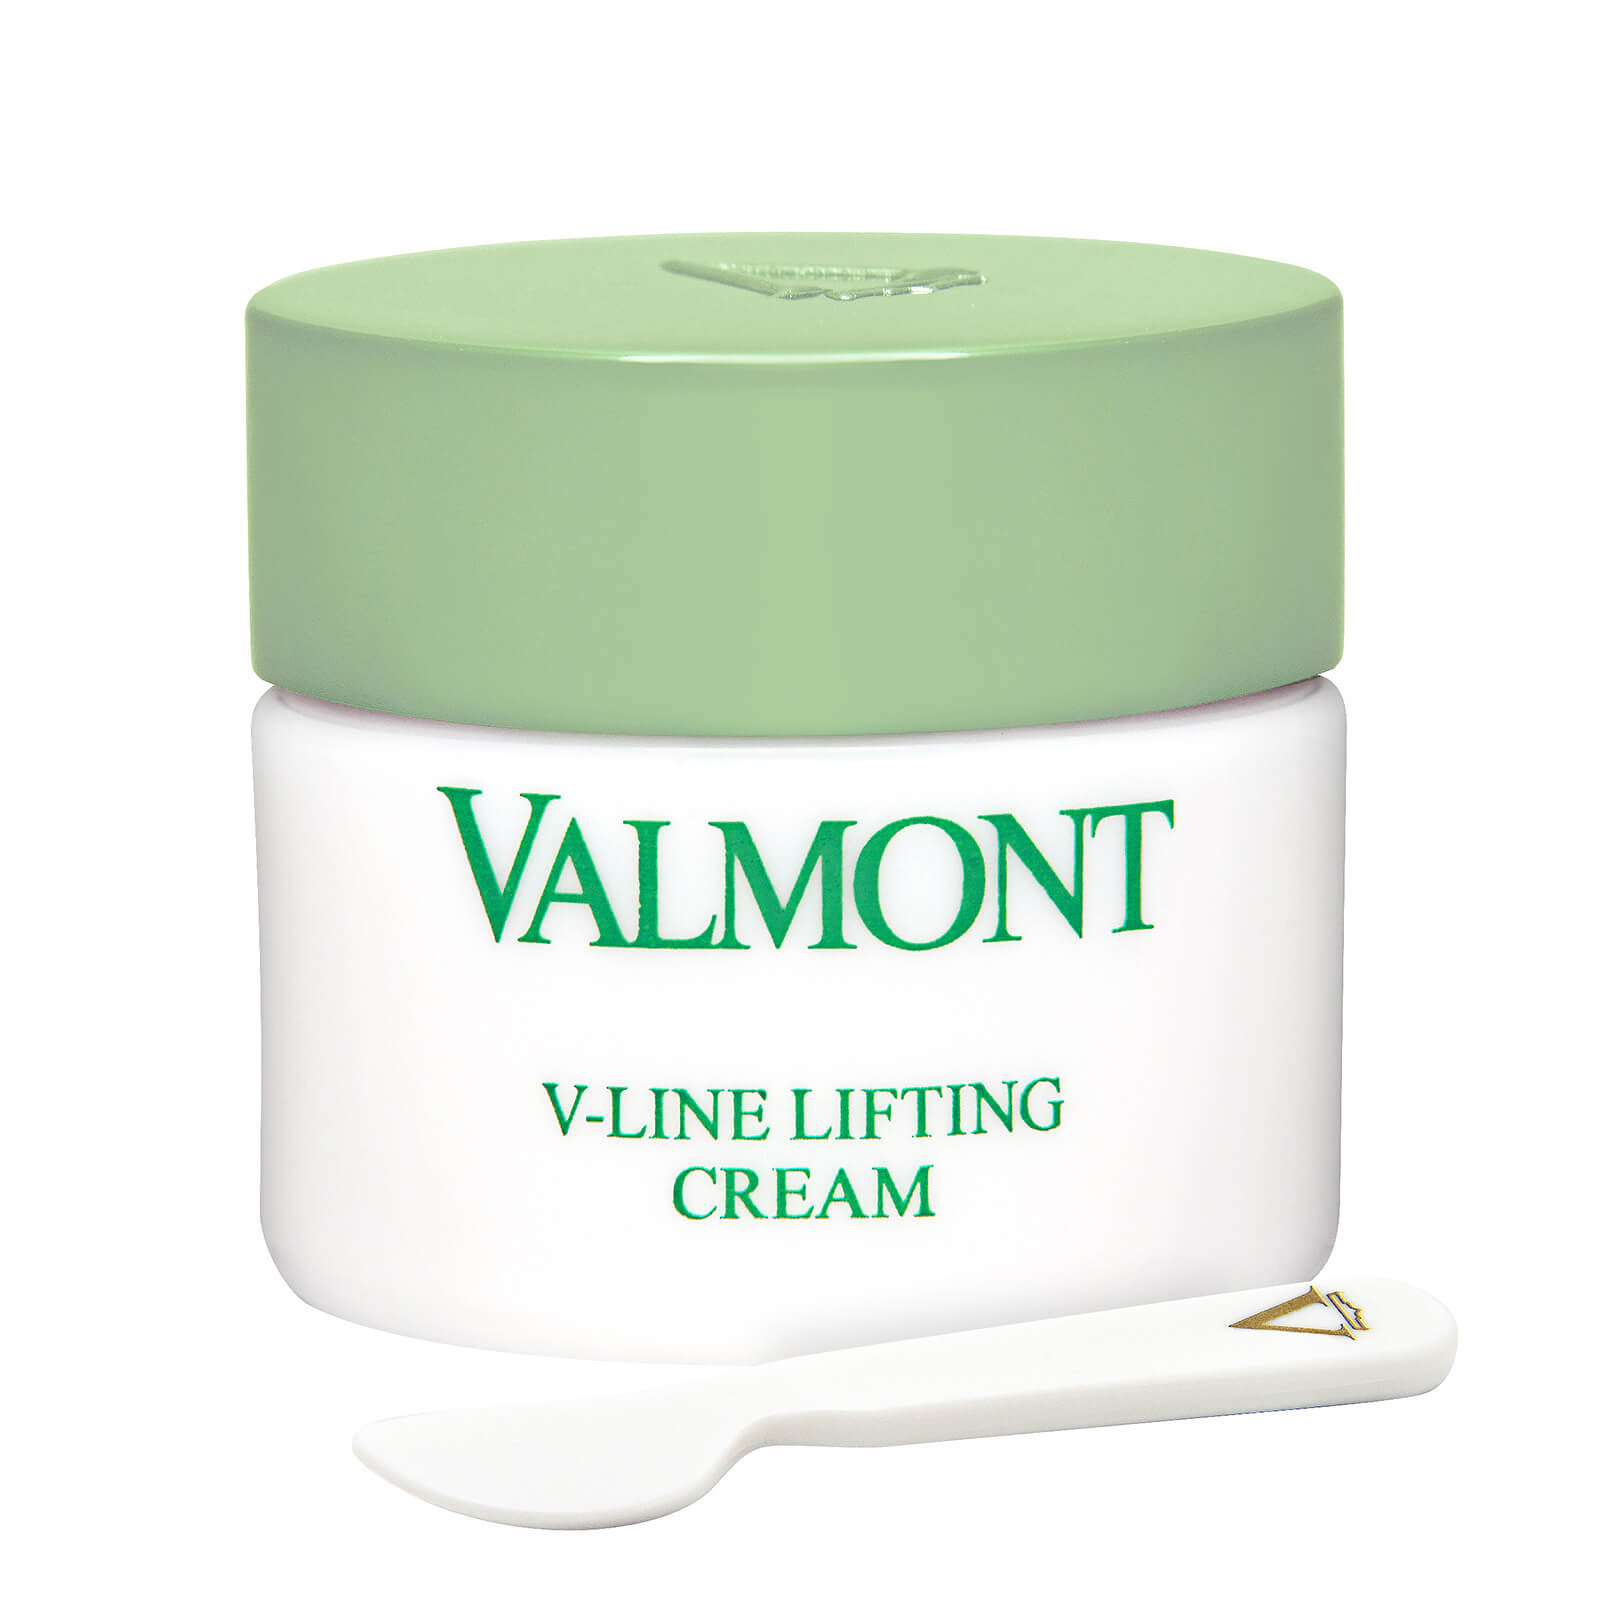 V-Line Lifting Cream